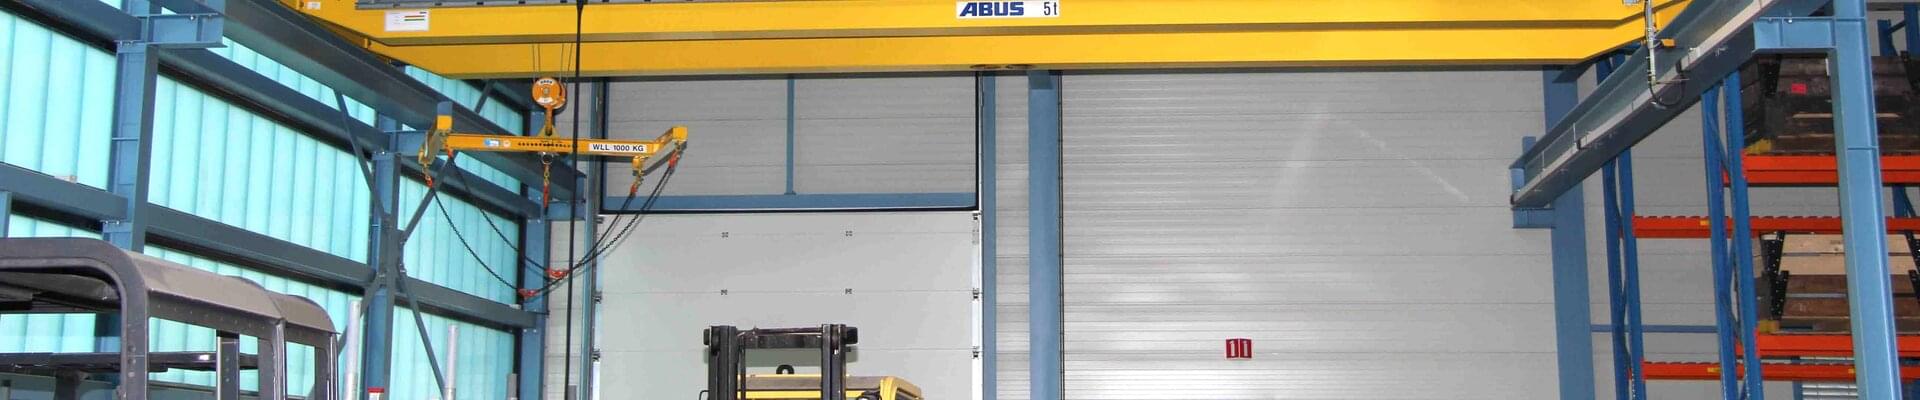 Żuraw ABUS o nośności 5 t w firmie NedTrain Componenten w Holandii